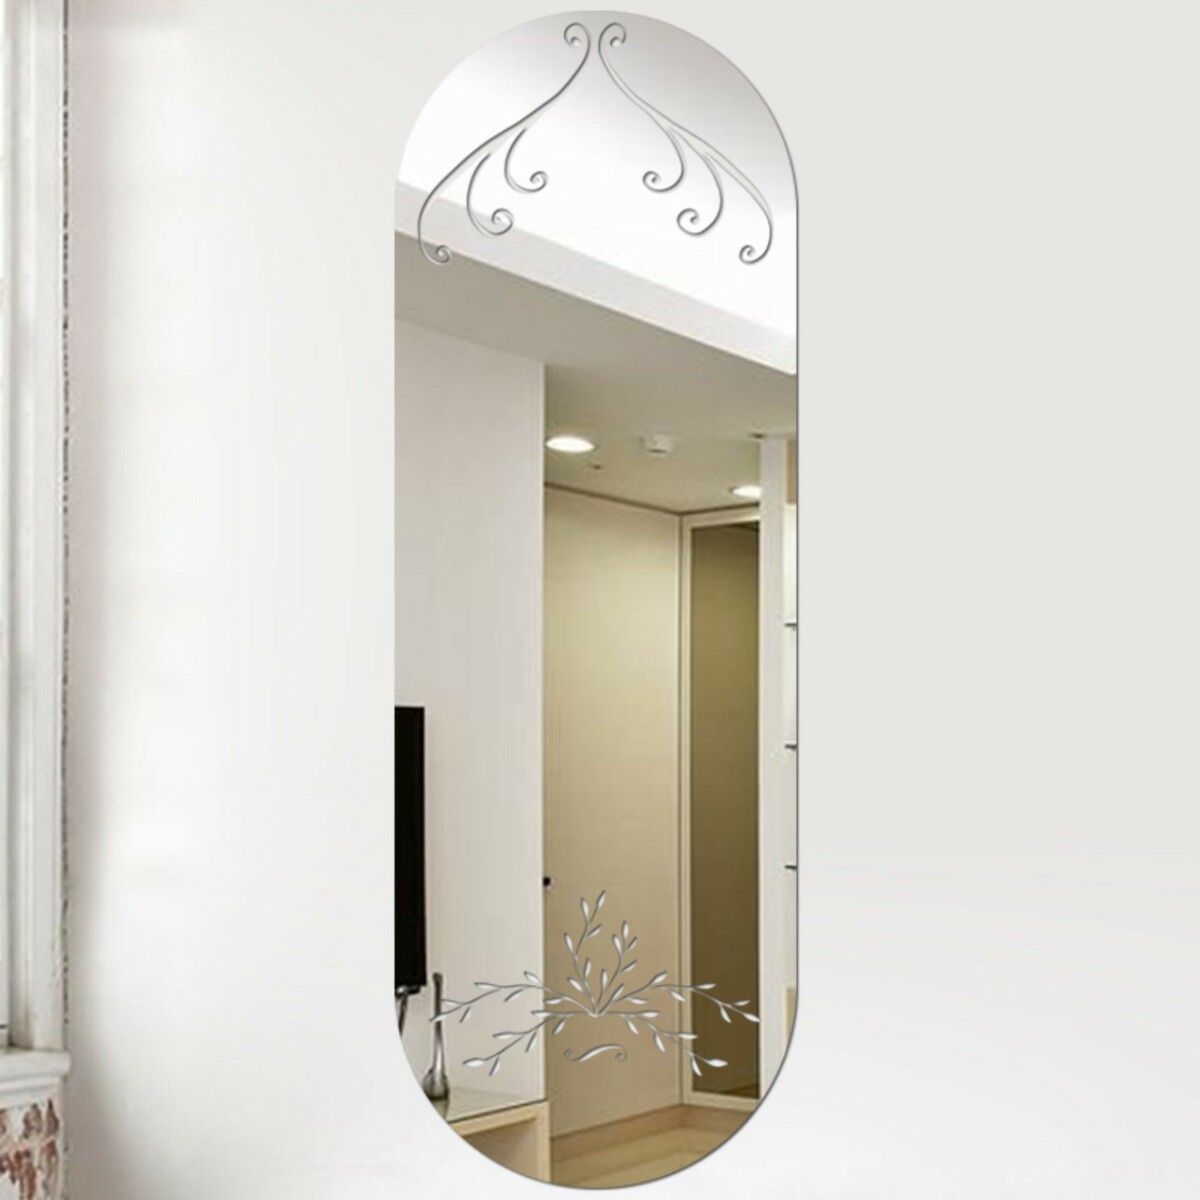 Зеркало настенное, наклейки интерьерные, зеркальные, декор на стену, панно 45 х 15 см зеркало настольное круг на подставке двустороннее с увеличением d зеркальной поверхности 12 5 см прозрачный